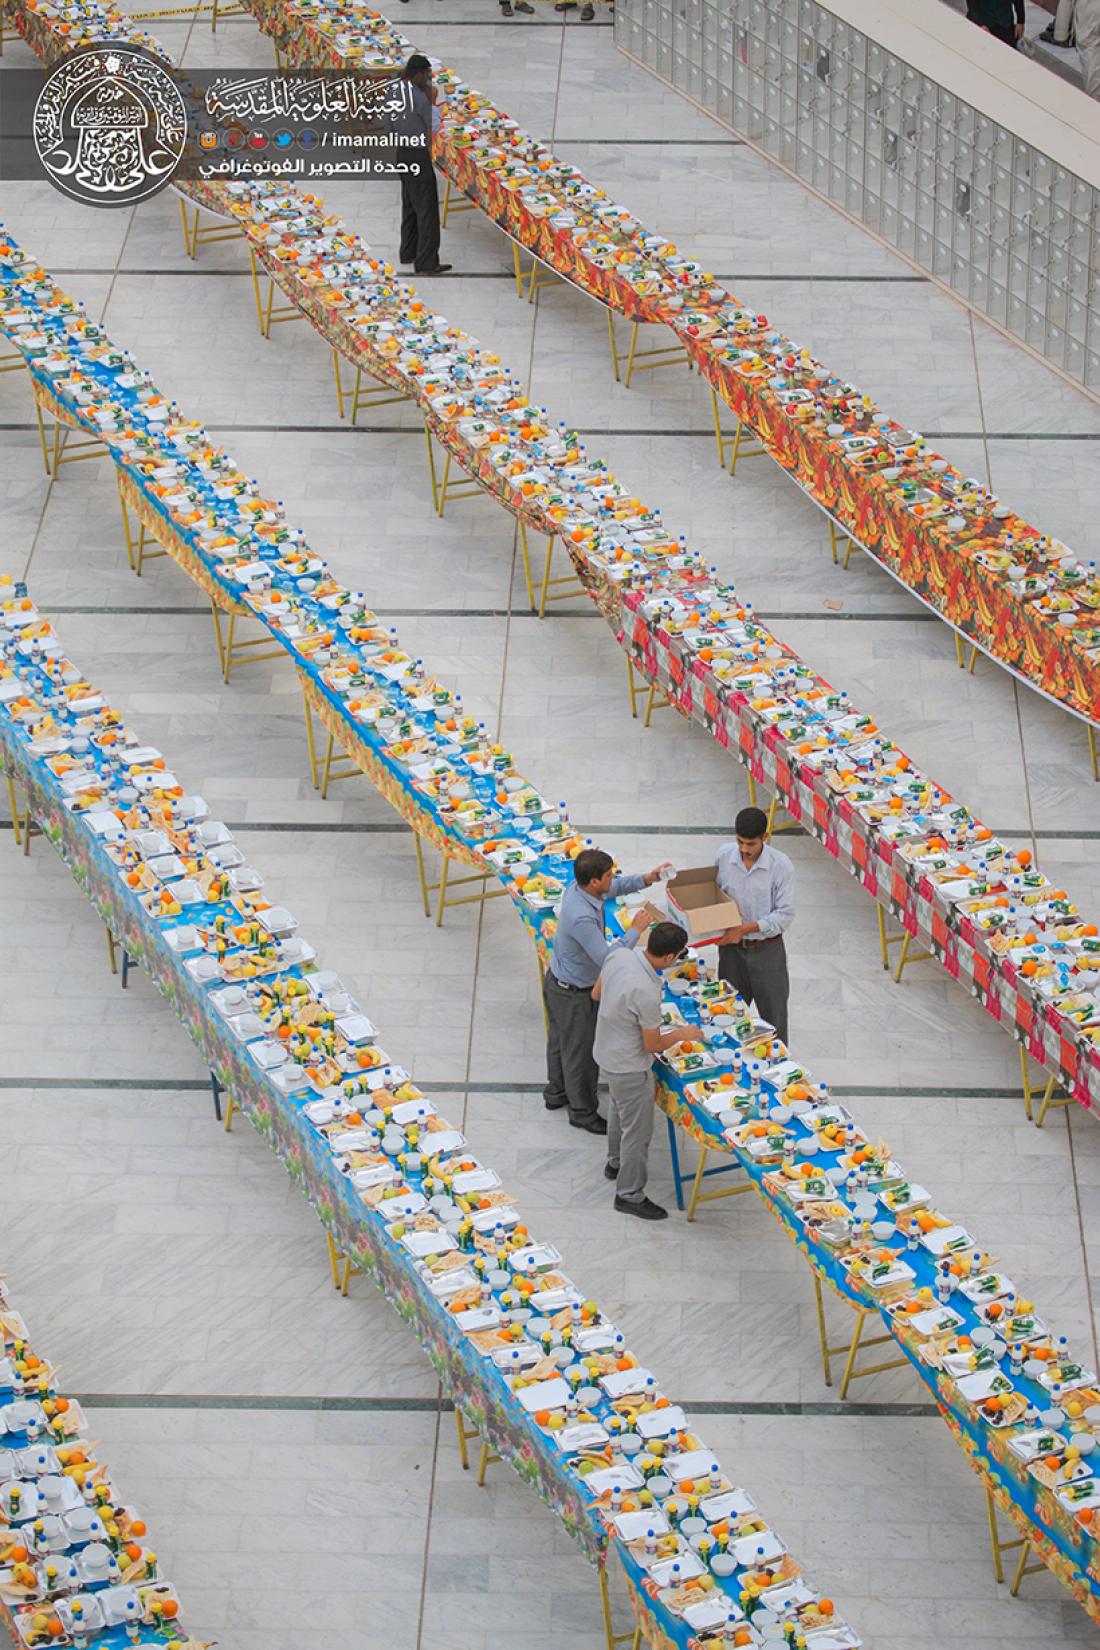 تقرير مصور : الامانة العامة للعتبة العلوية المقدسة تقوم بمائدة افطار للصائمين بعدد 10.000 وجبة قرب المرقد المطهر | 